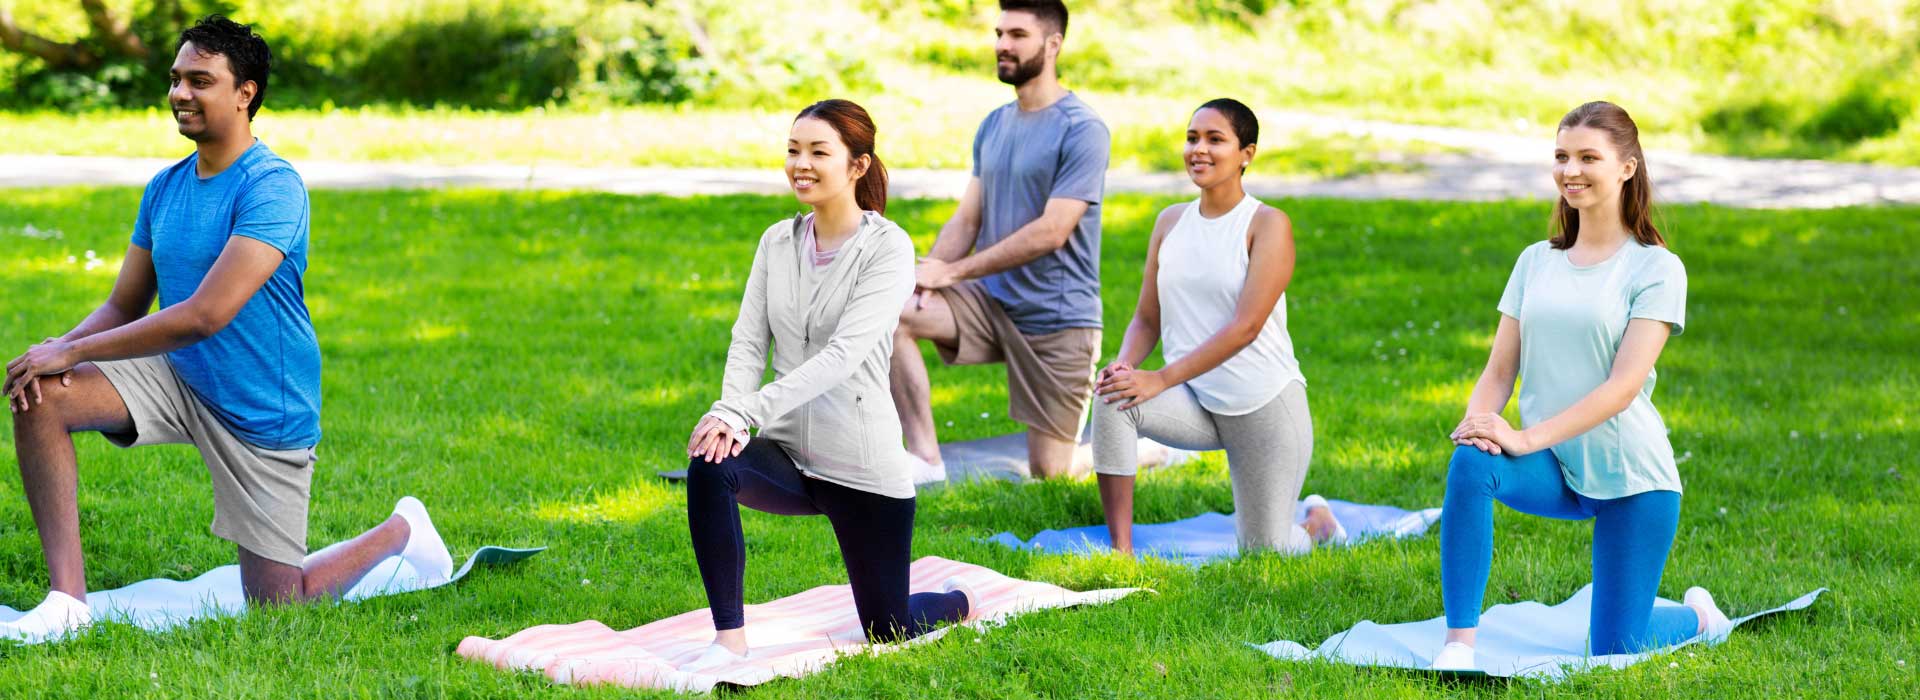 yoga-practice-outdoor-grass